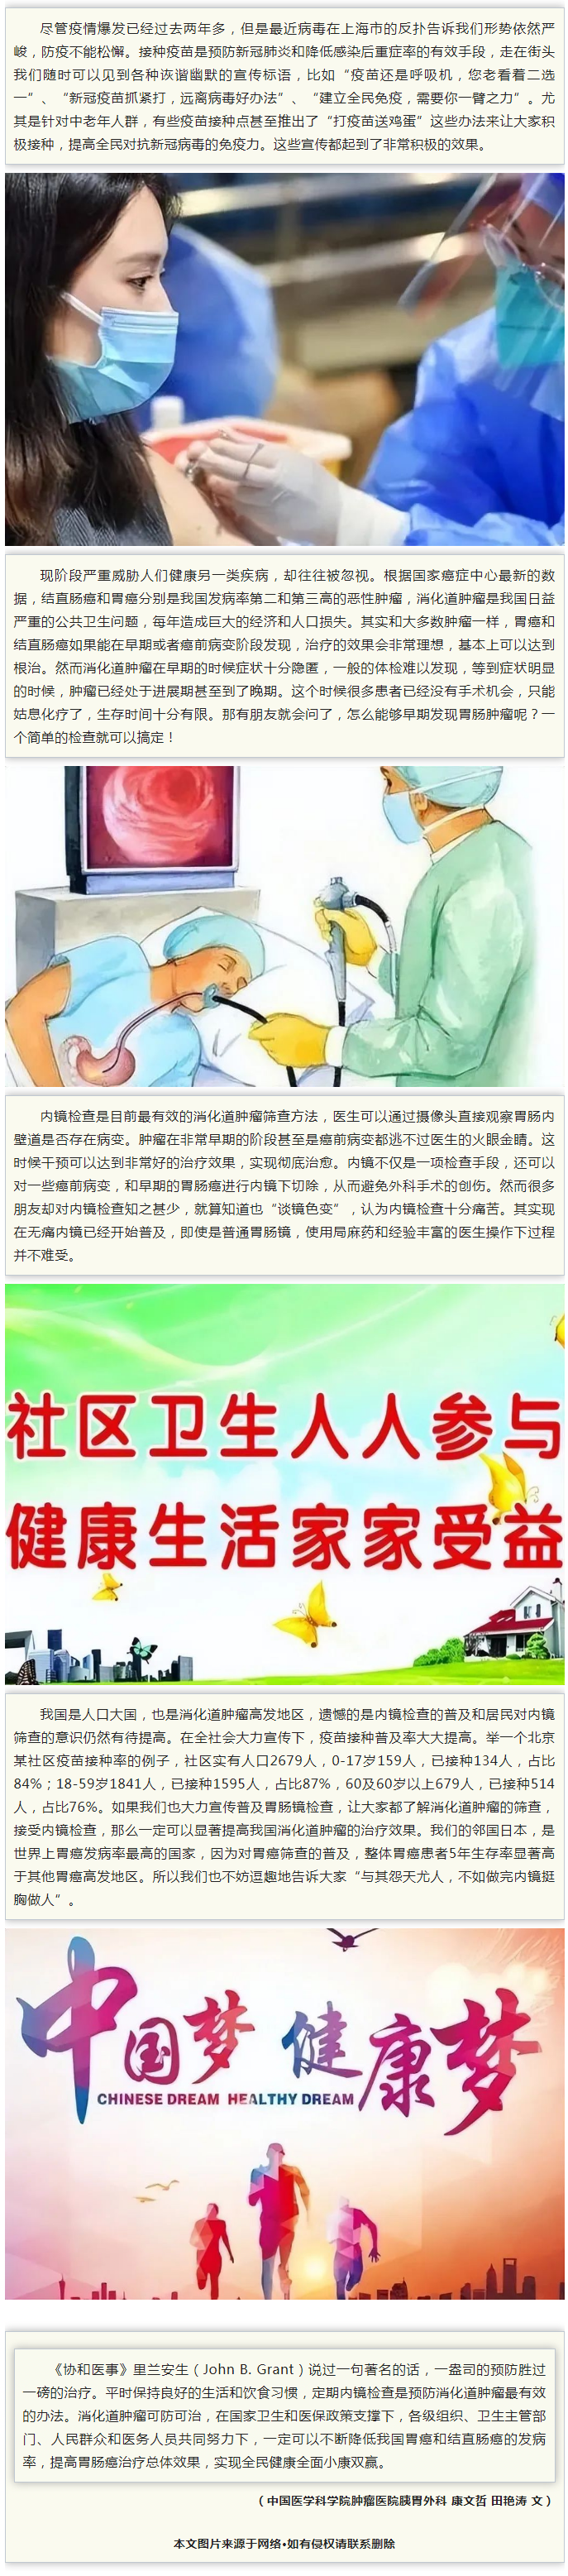 田艳涛教授：从疫苗接种国家策略看胃肠镜检查的普及.png